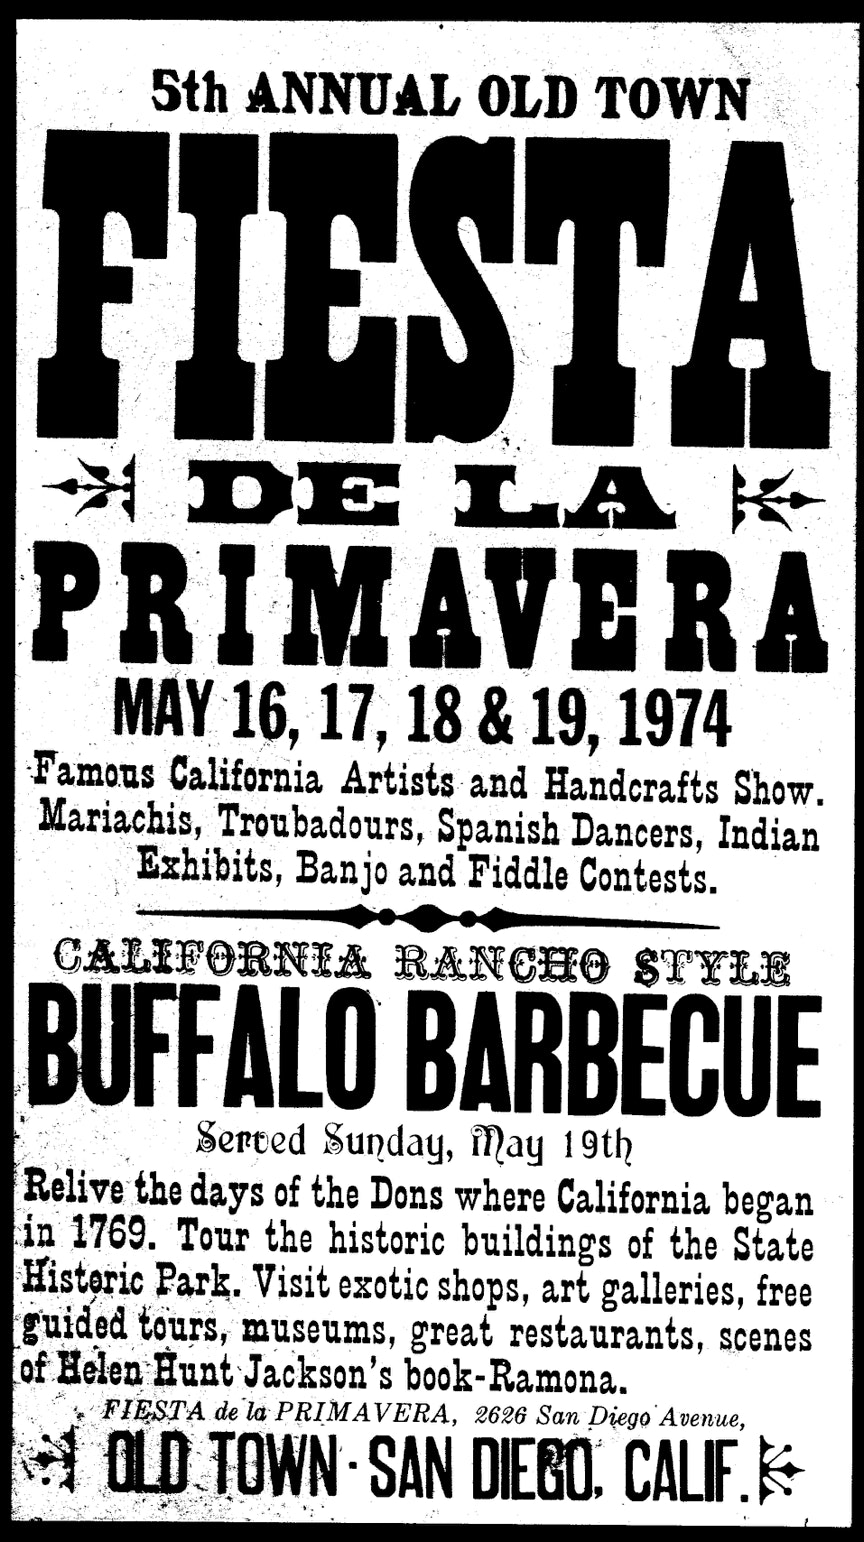 poster for the 5th Annual Old Town Fiesta de la Primavera, in San Diego, California, 1974.